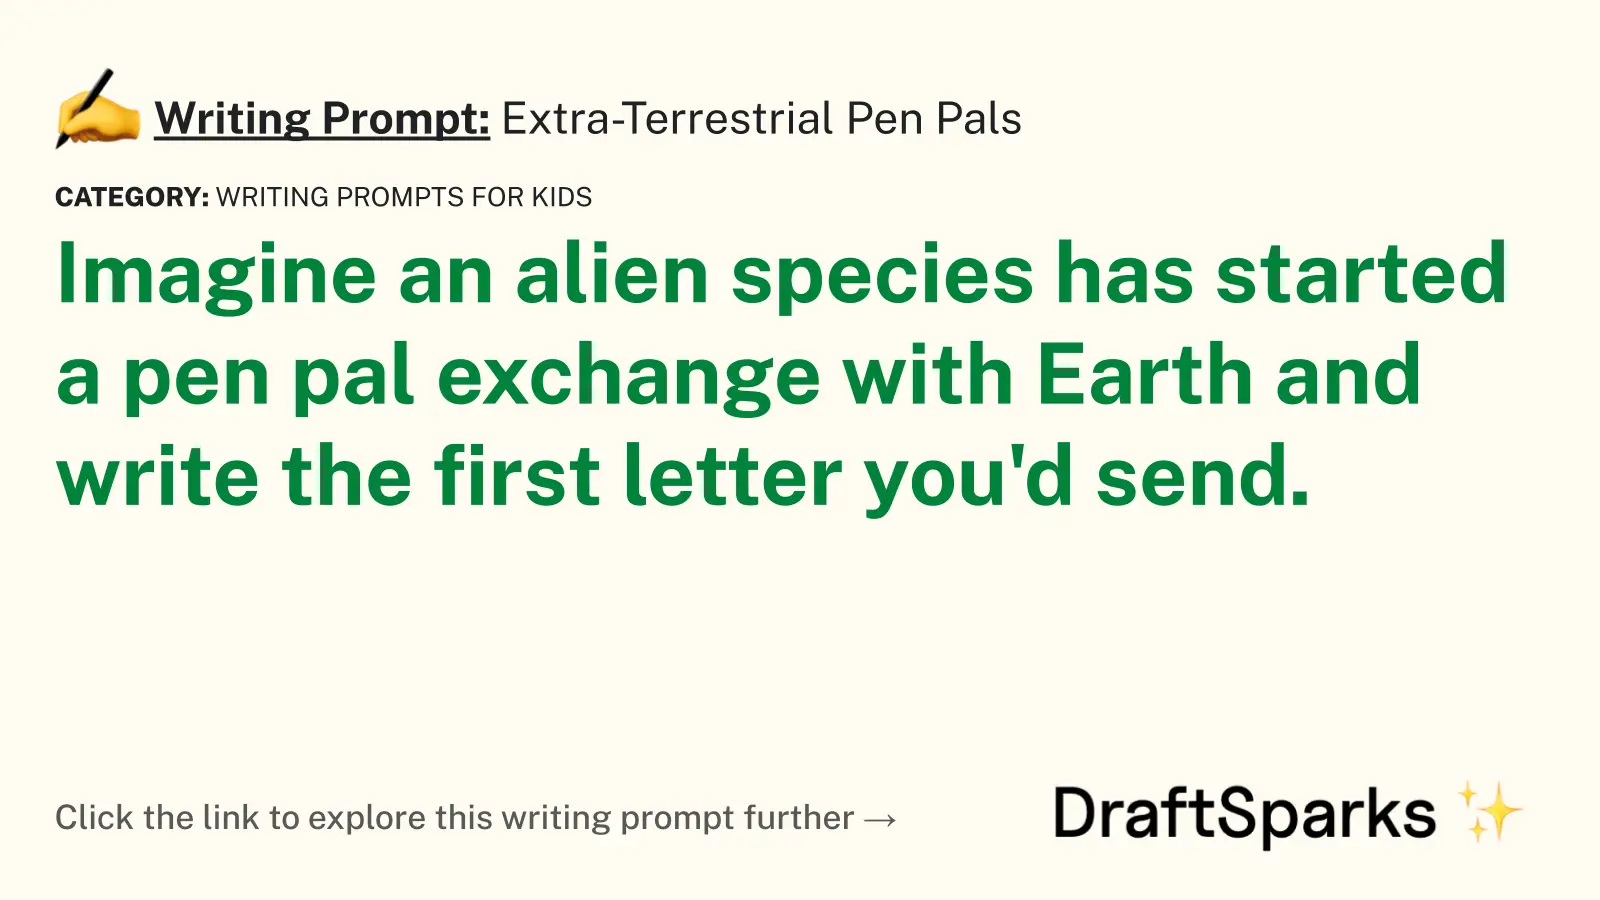 Extra-Terrestrial Pen Pals